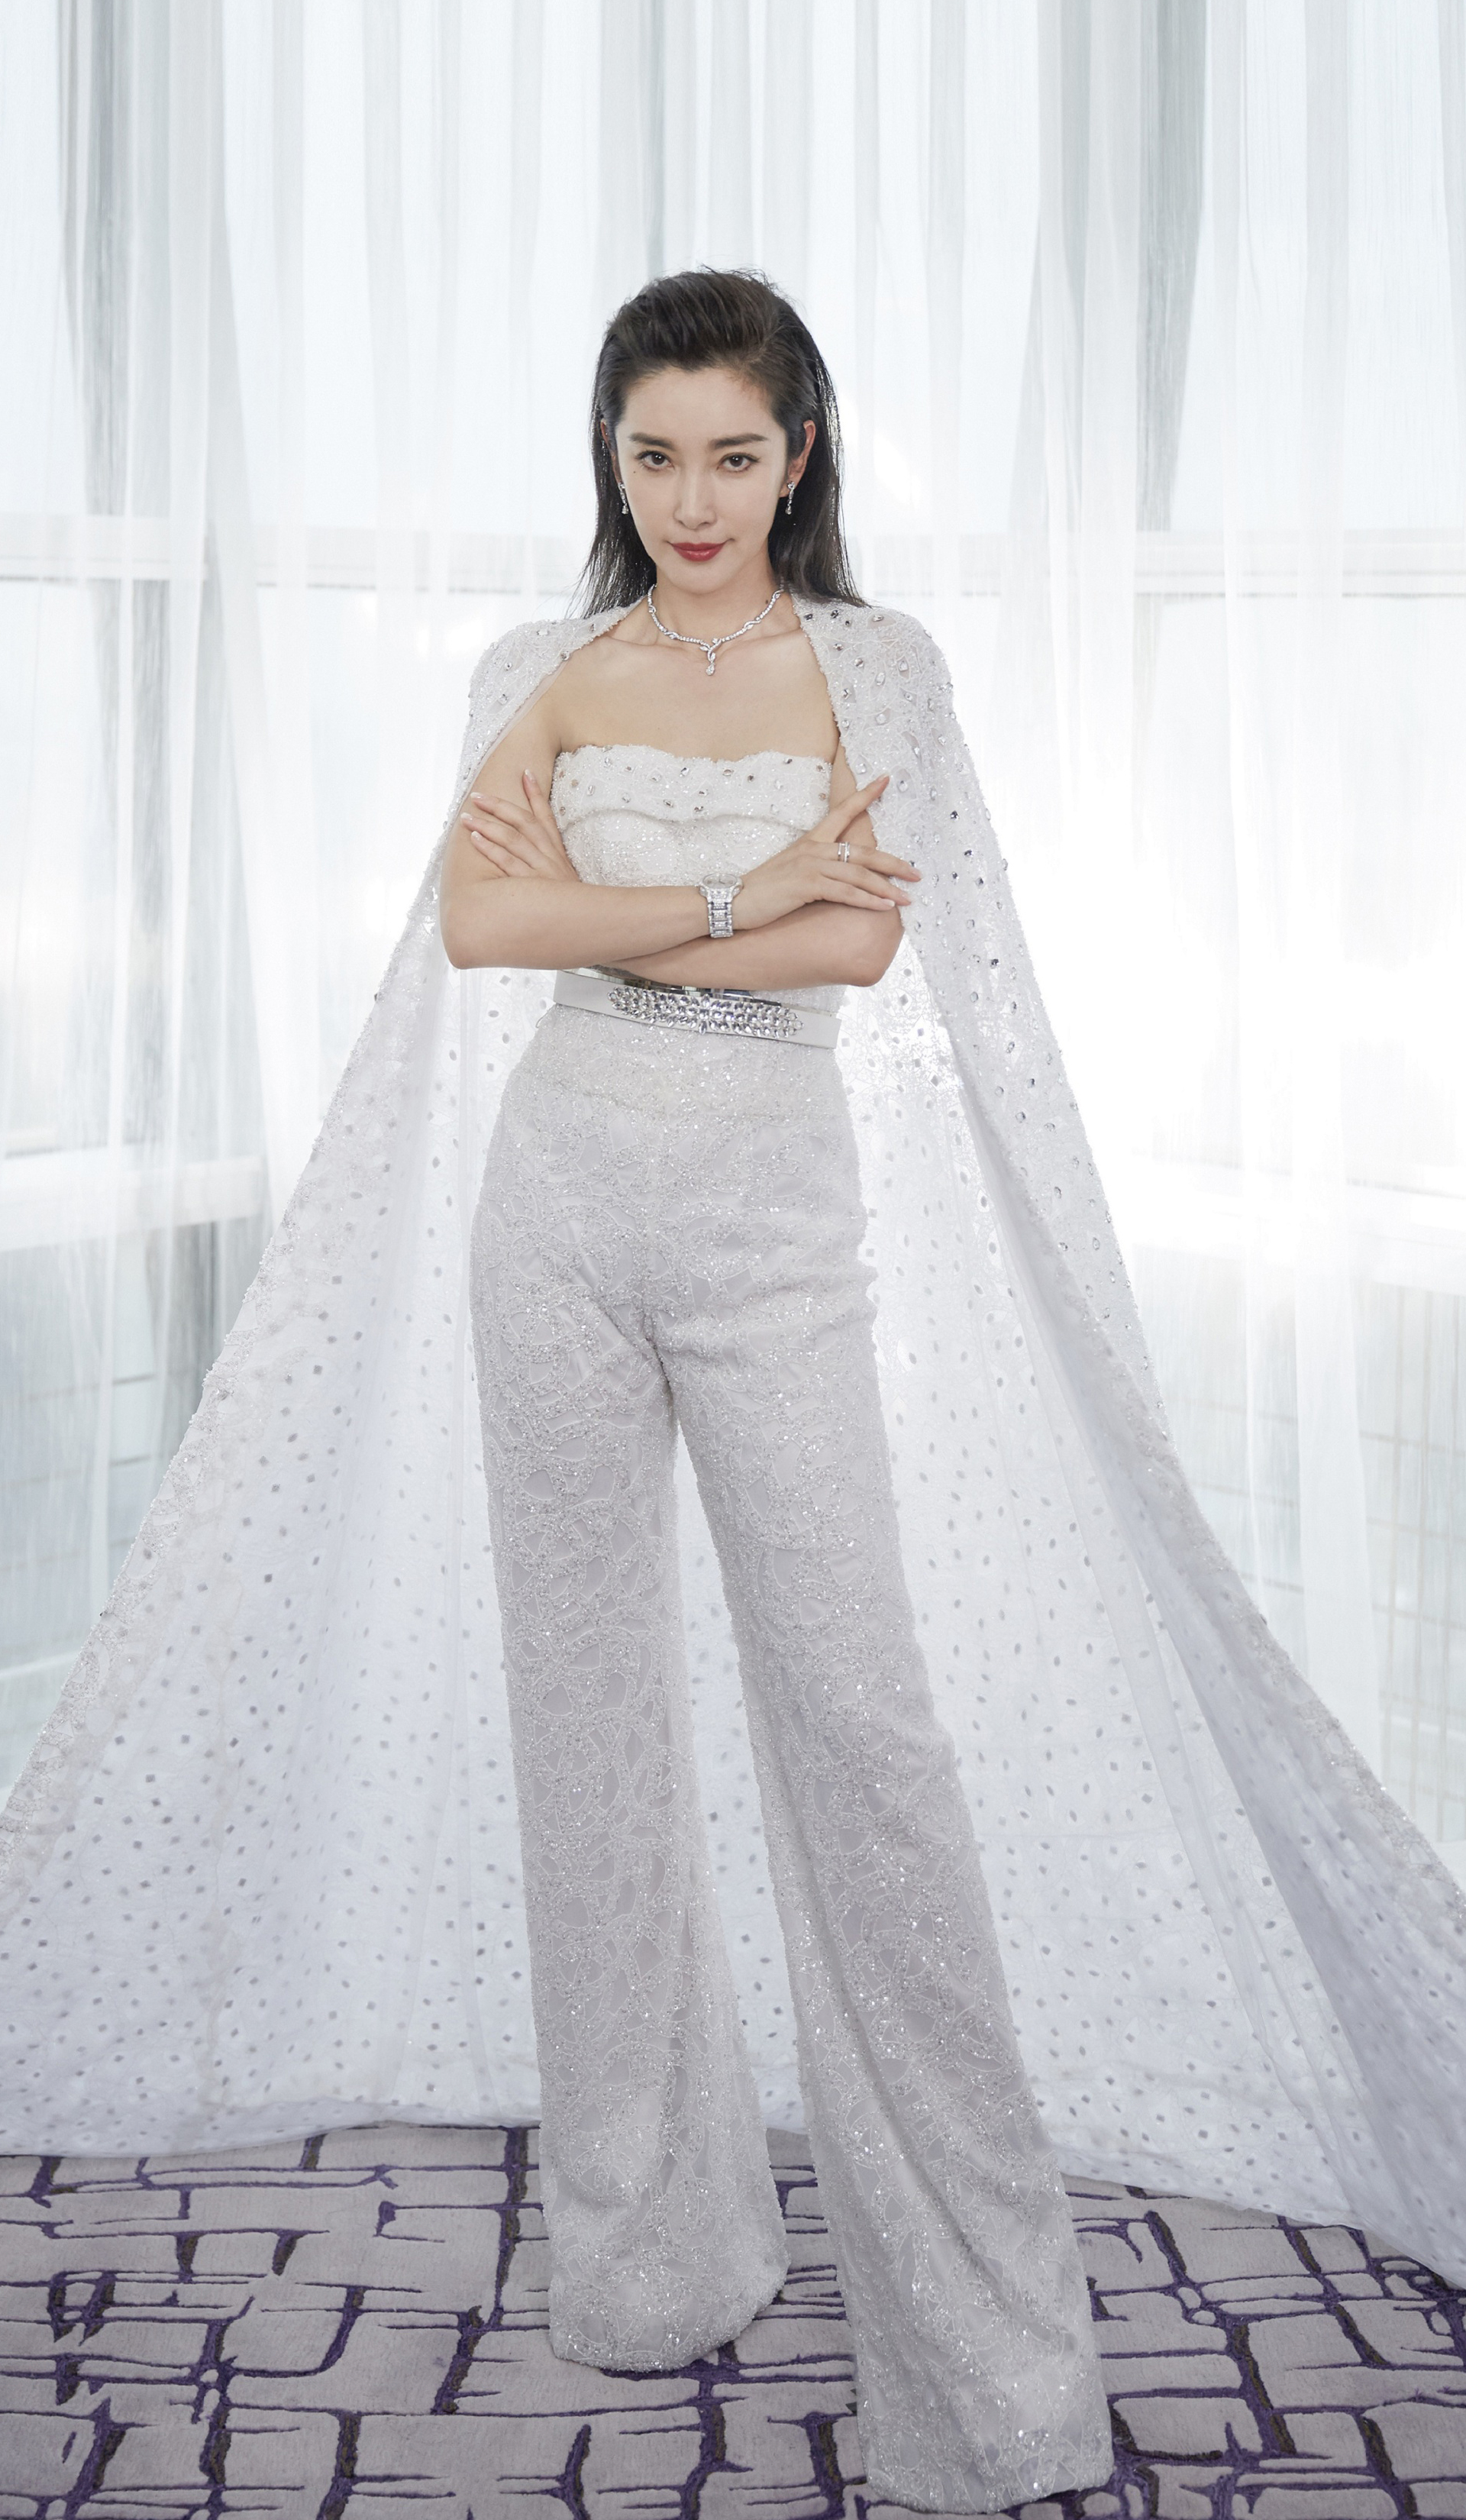 李冰冰活动宣传美图,一身纯白系穿搭靓丽动人